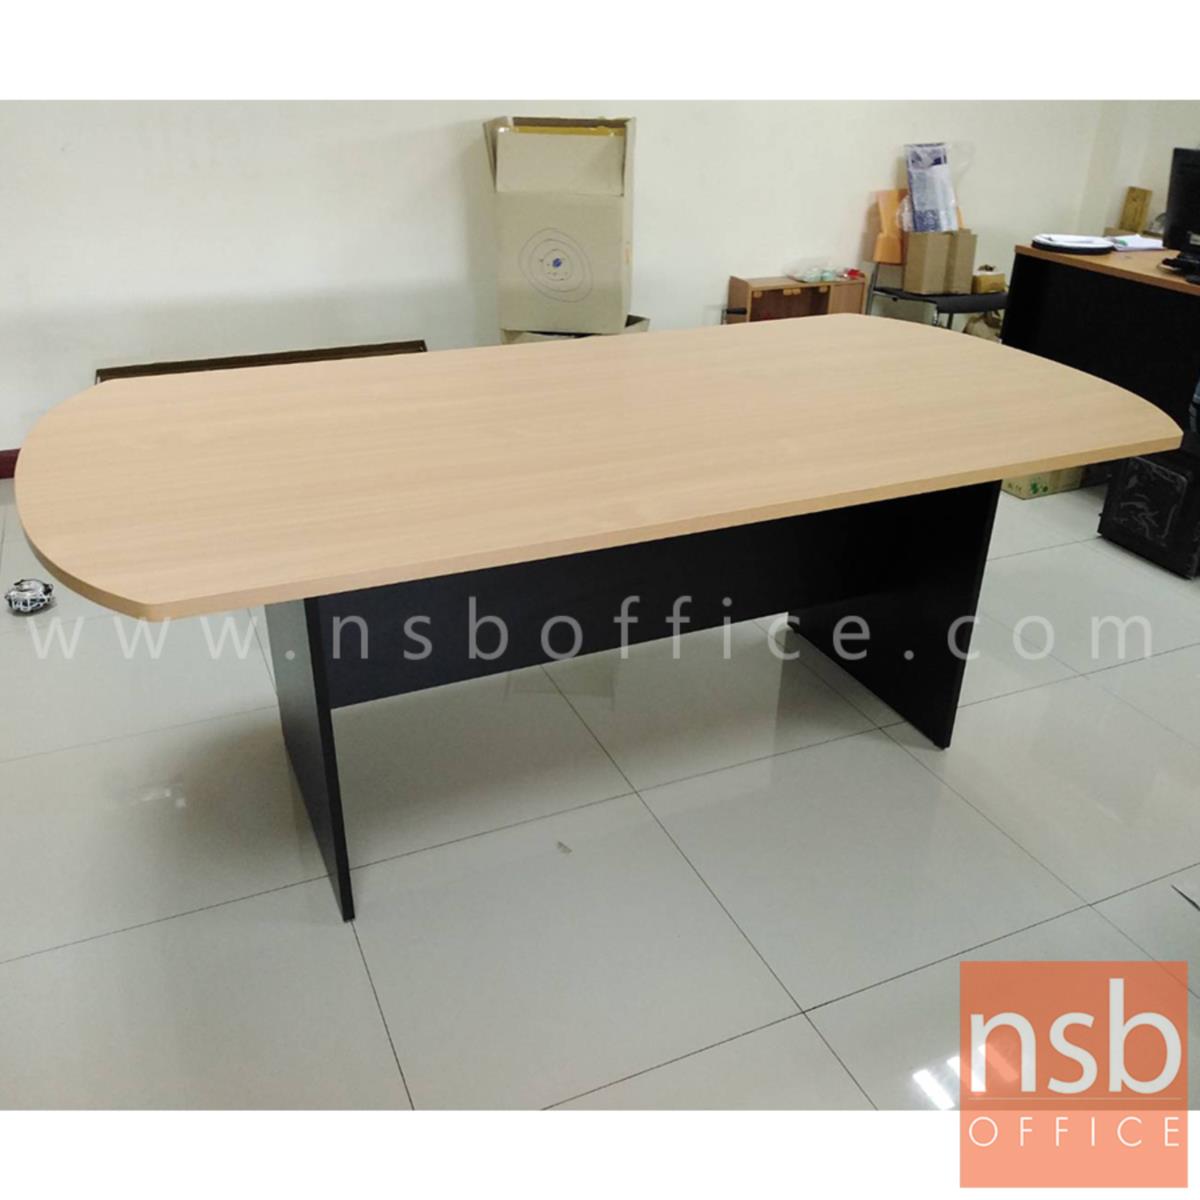 โต๊ะประชุมหัวโค้ง  ขนาด 180W, 200W, 240W cm. พร้อมระบบคานไม้ ขาไม้